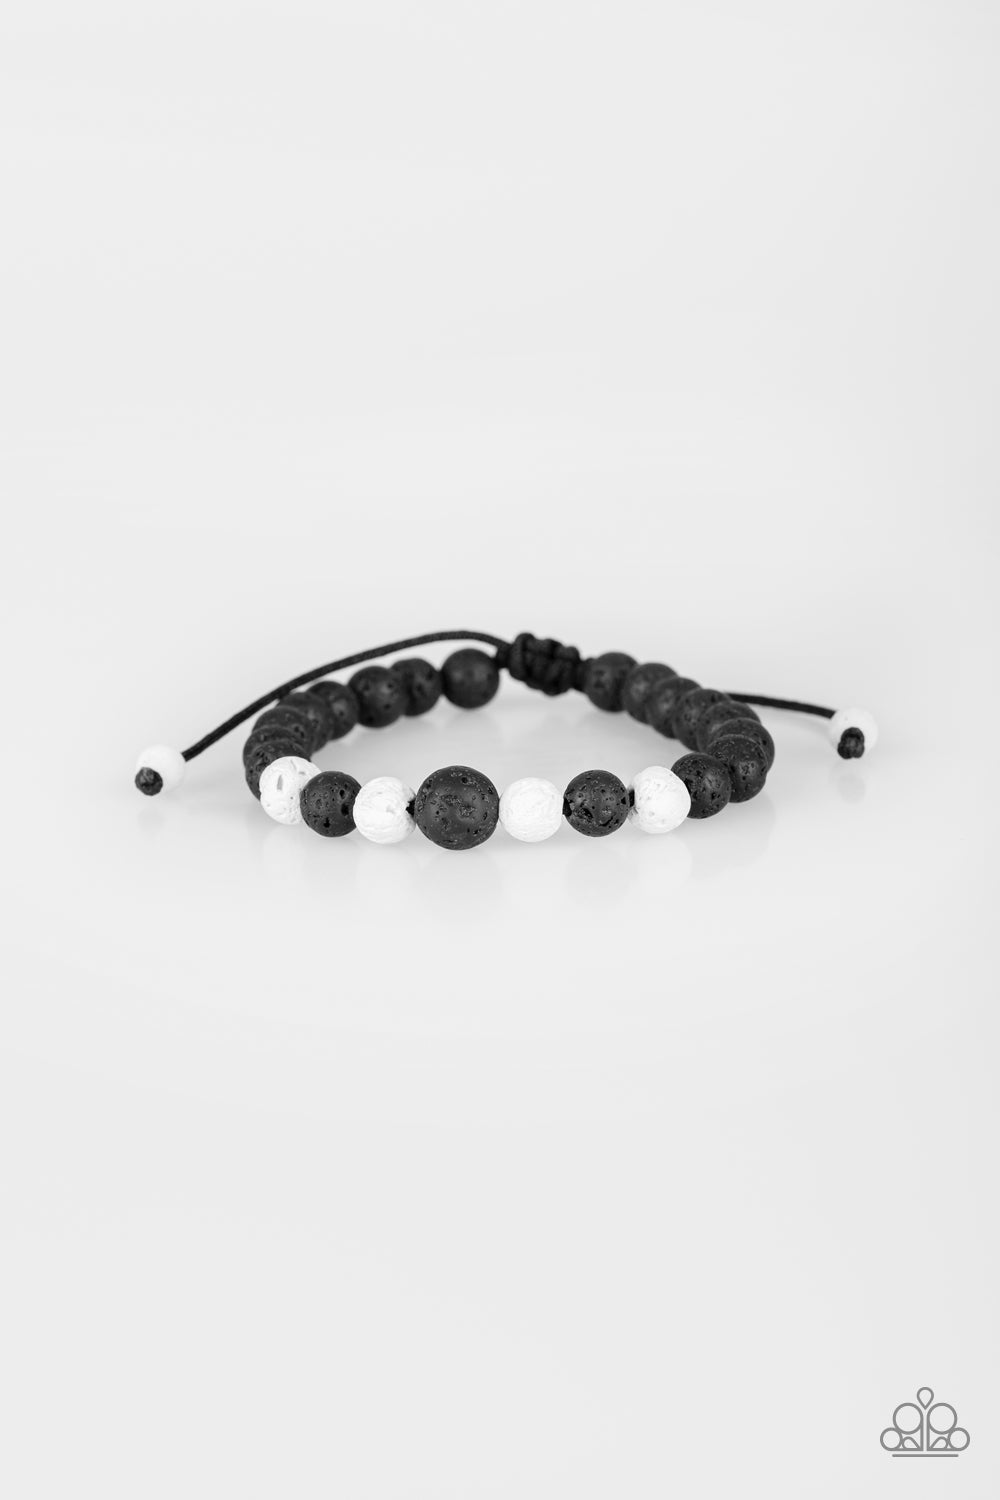 Sensei Sensation - Lava Bead Bracelet